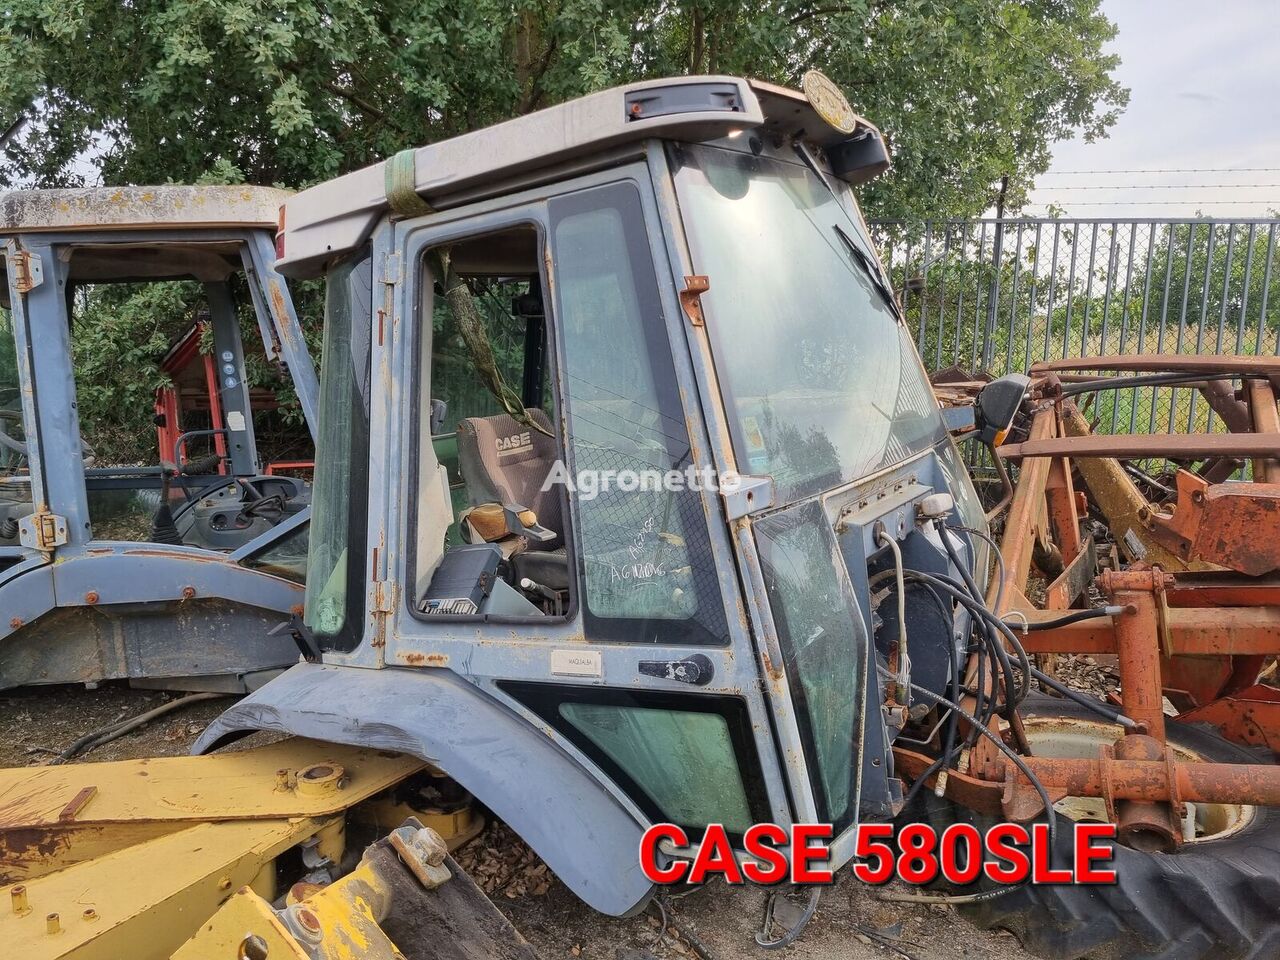 Case IH CABINE CASE 580SLE førerhus for hjul traktor